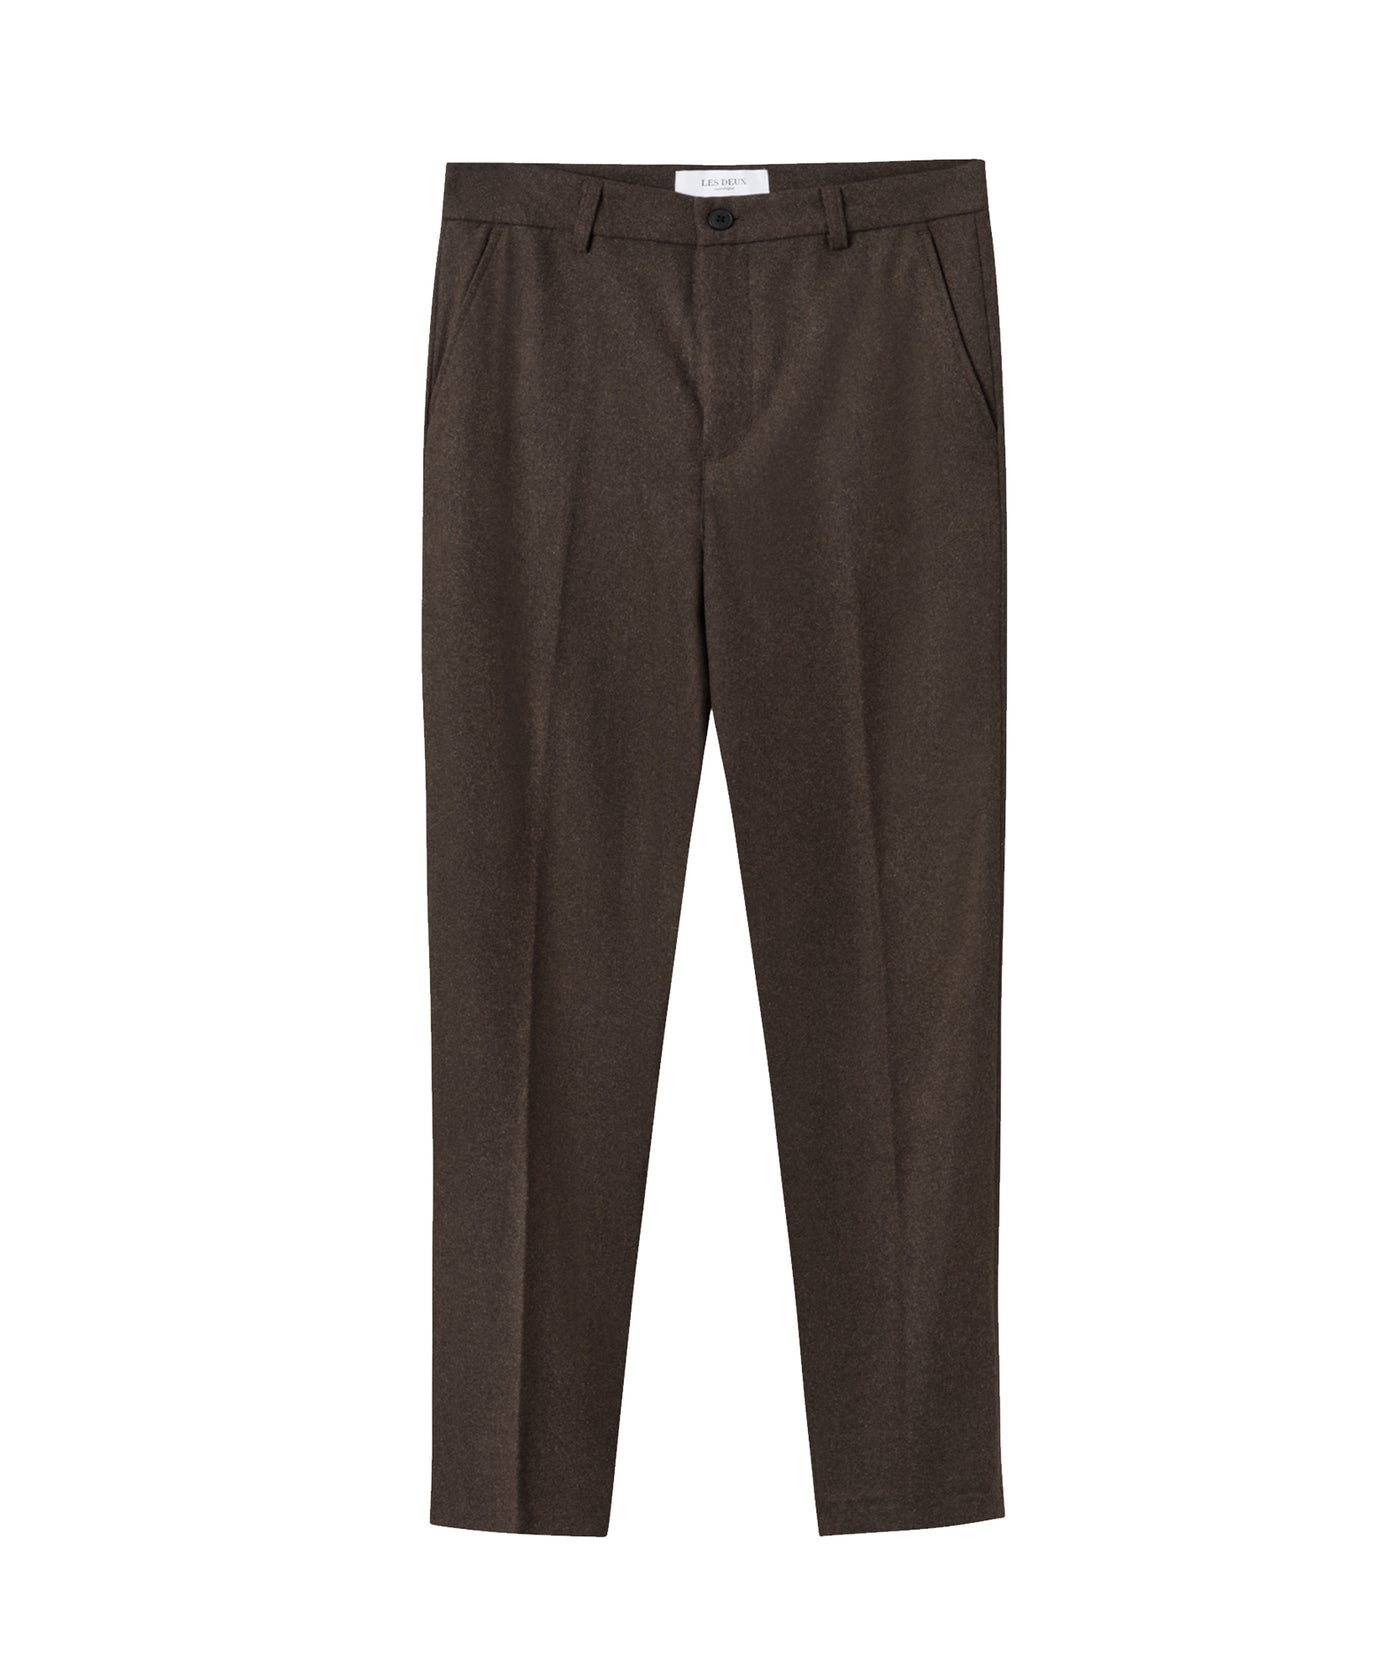 Les Deux - Ldm510050 - Como Reg Wool Pants - Coffee Brown